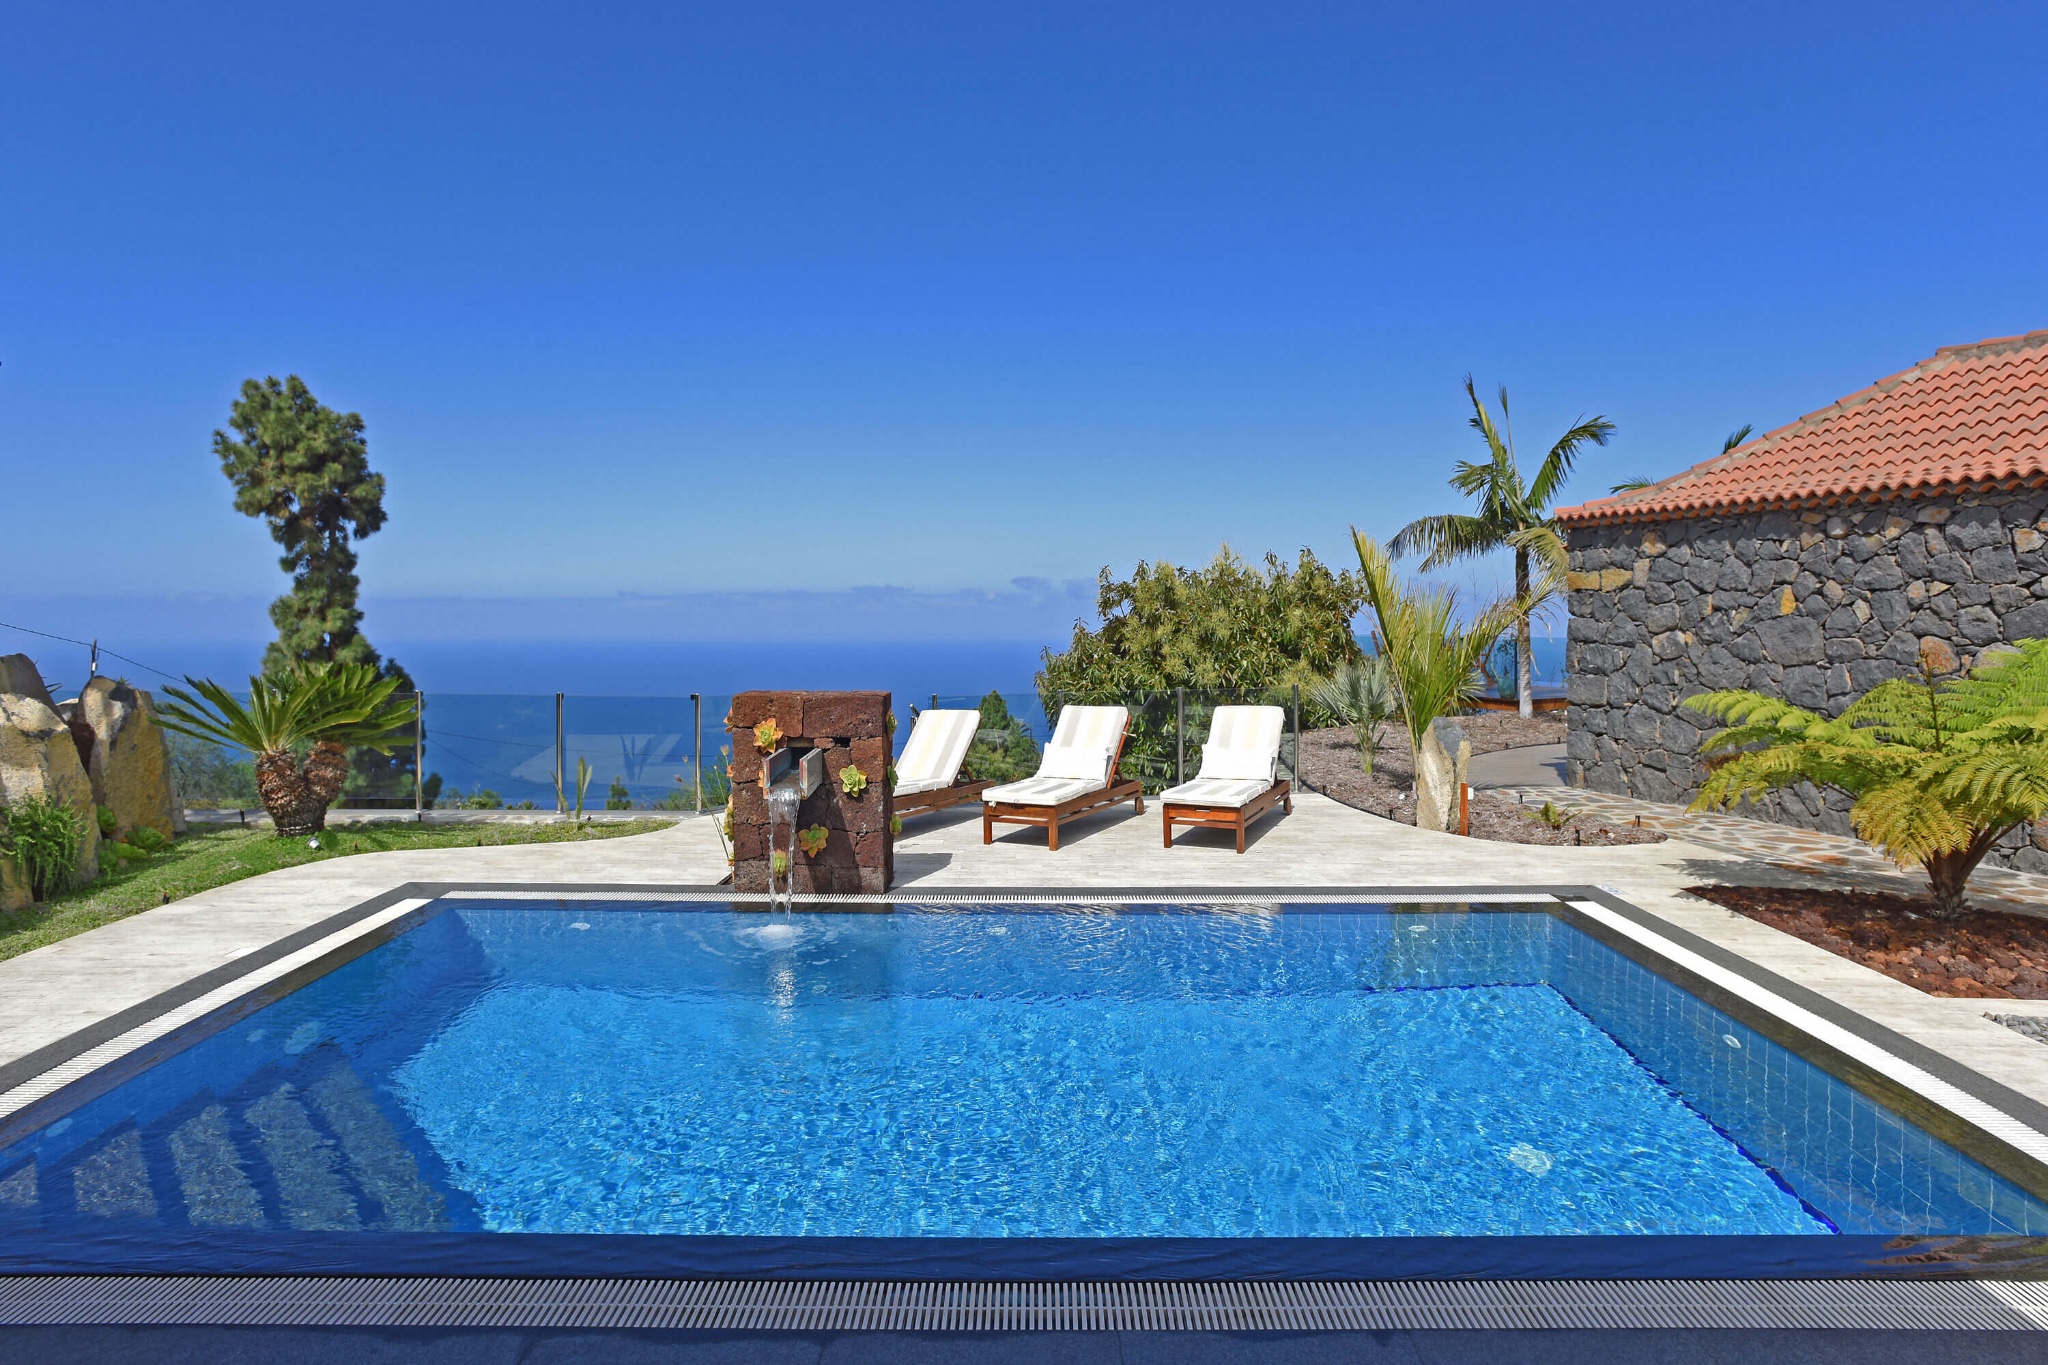 Maison de vacances spacieuse avec un design intérieur élégant, un joli jardin arboré de palmiers et une superbe vue panoramique sur la mer et les montagnes